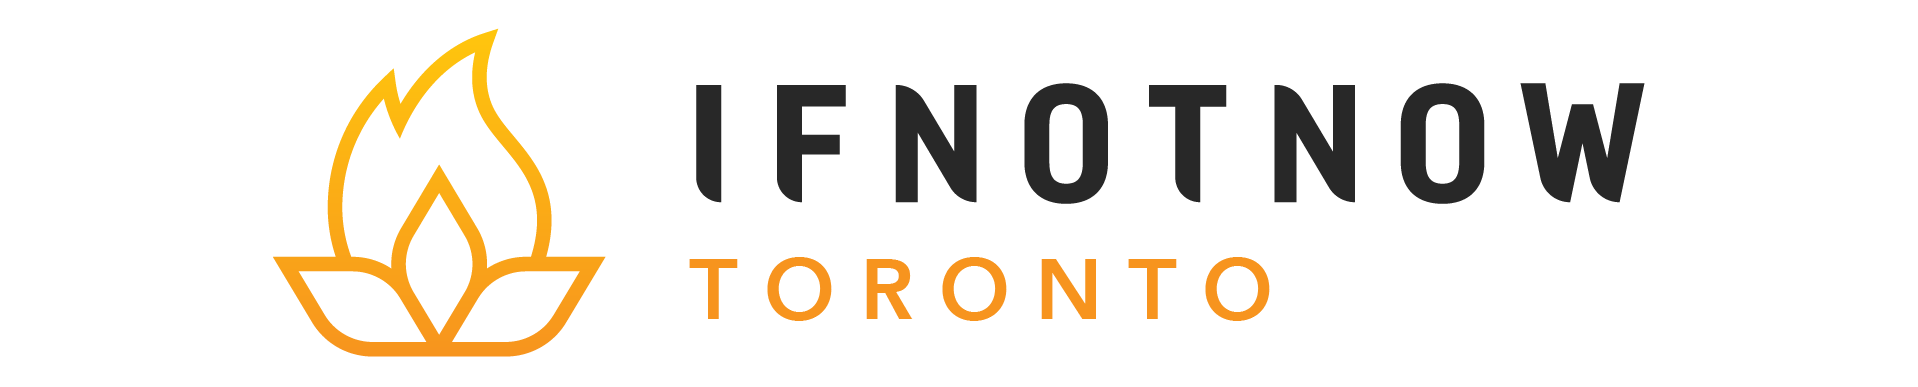 IfNotNow Toronto logo